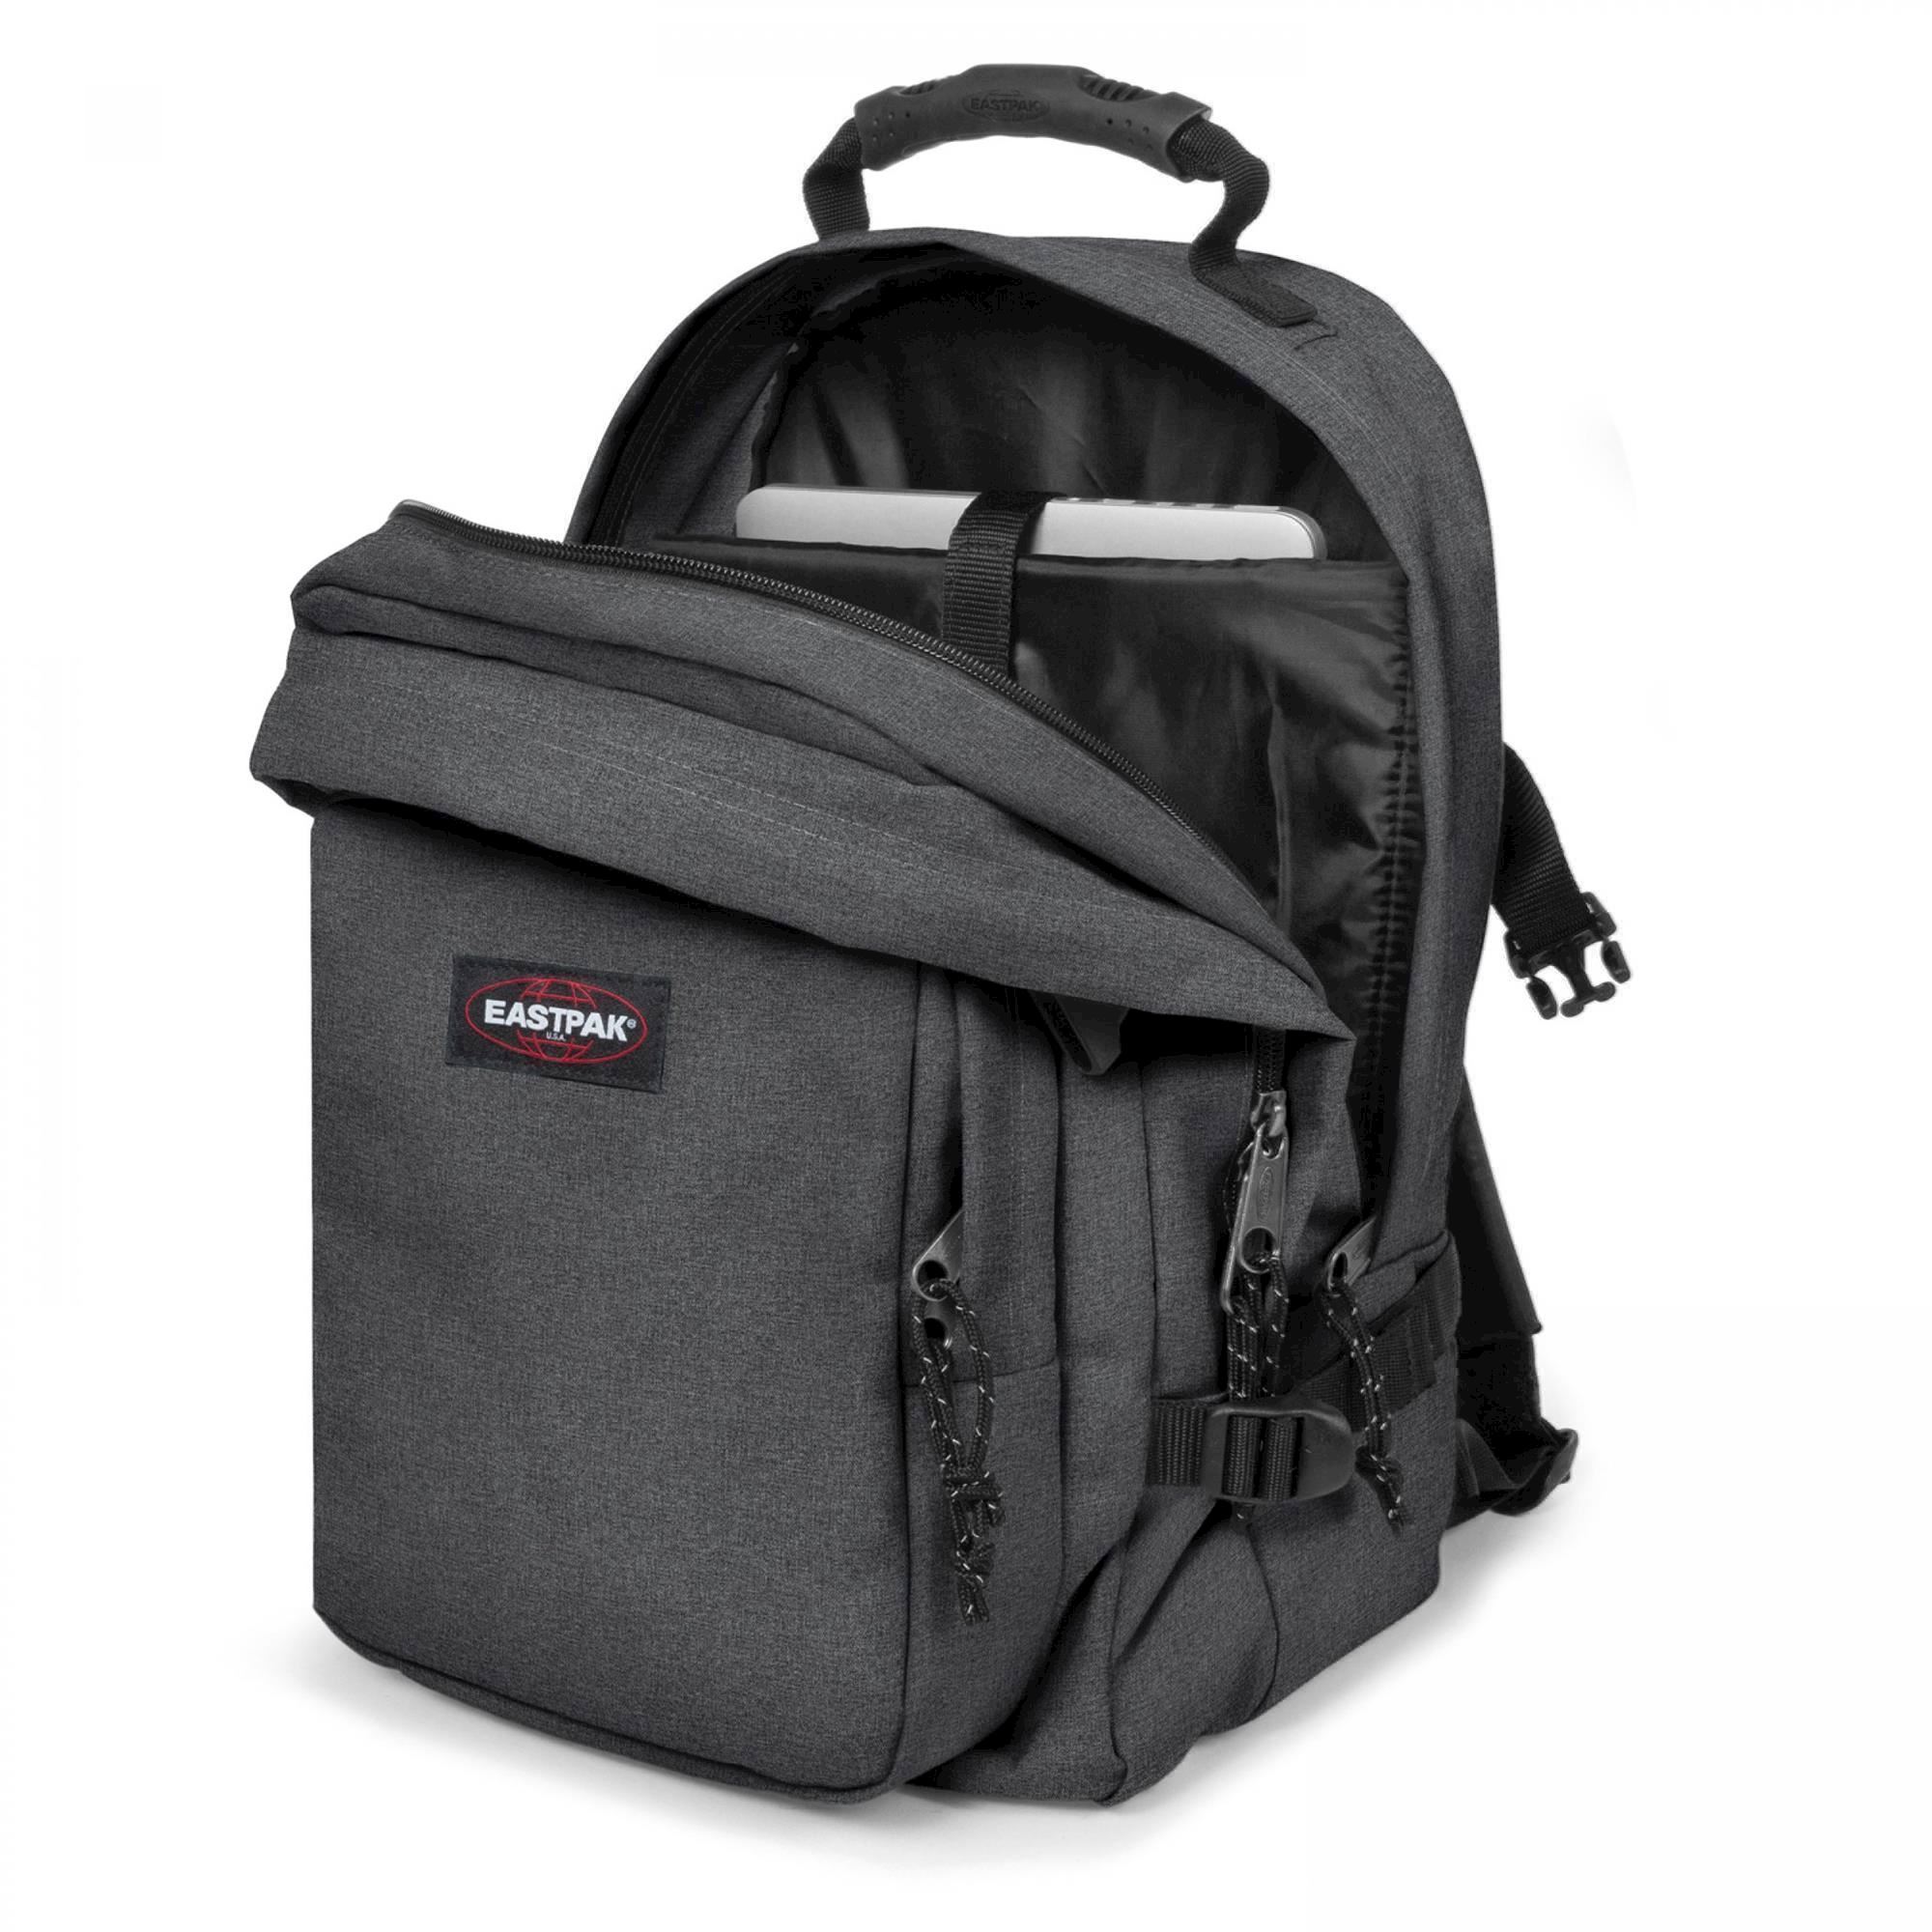 Afstem tag et billede bekymring model ek520-sort denim Eastpak, rygsæk Provider ek520